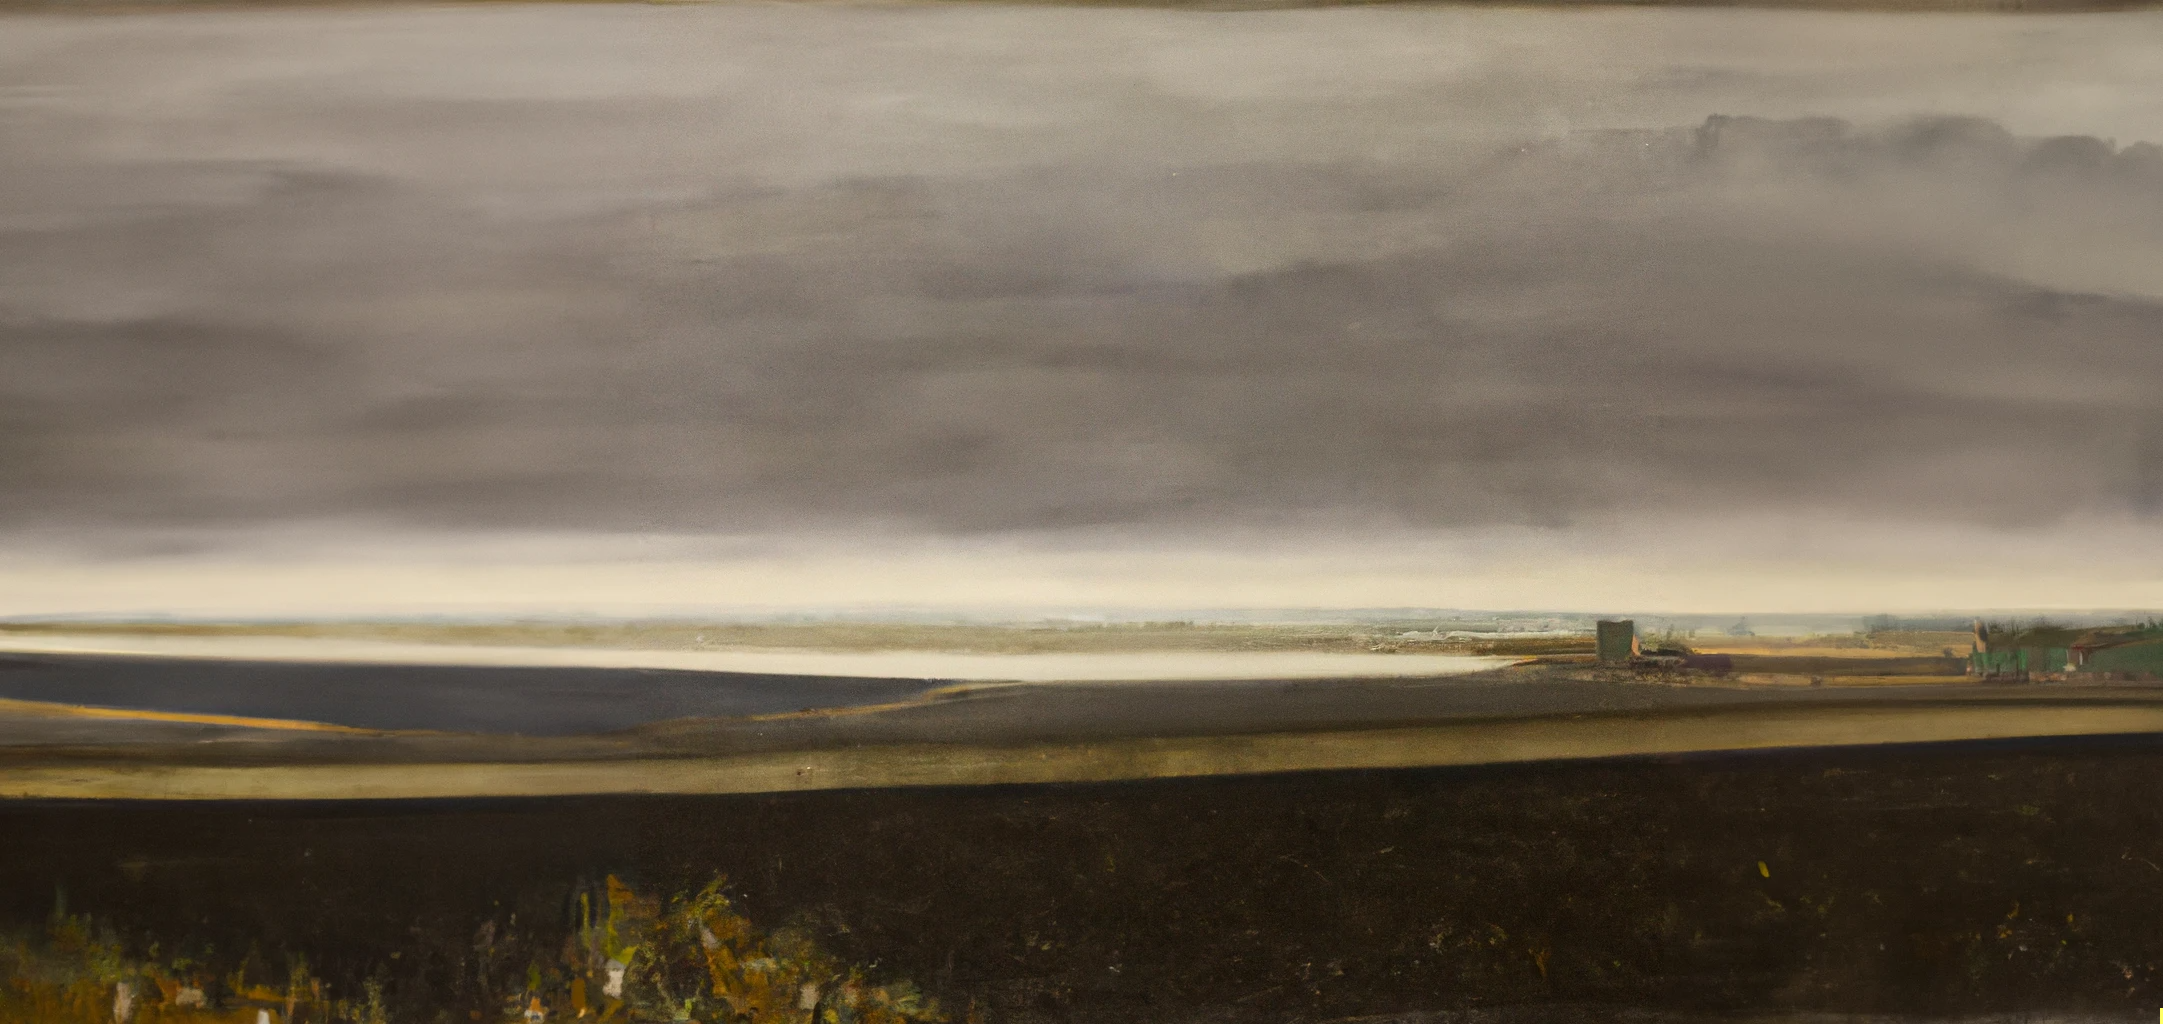 DALL·E 2022-11-28 22.45.41 - peinture flamande dans le style de Permeke d'un paysage agricole avec la mer à l'horizon, dans les tons ocres et gris.png